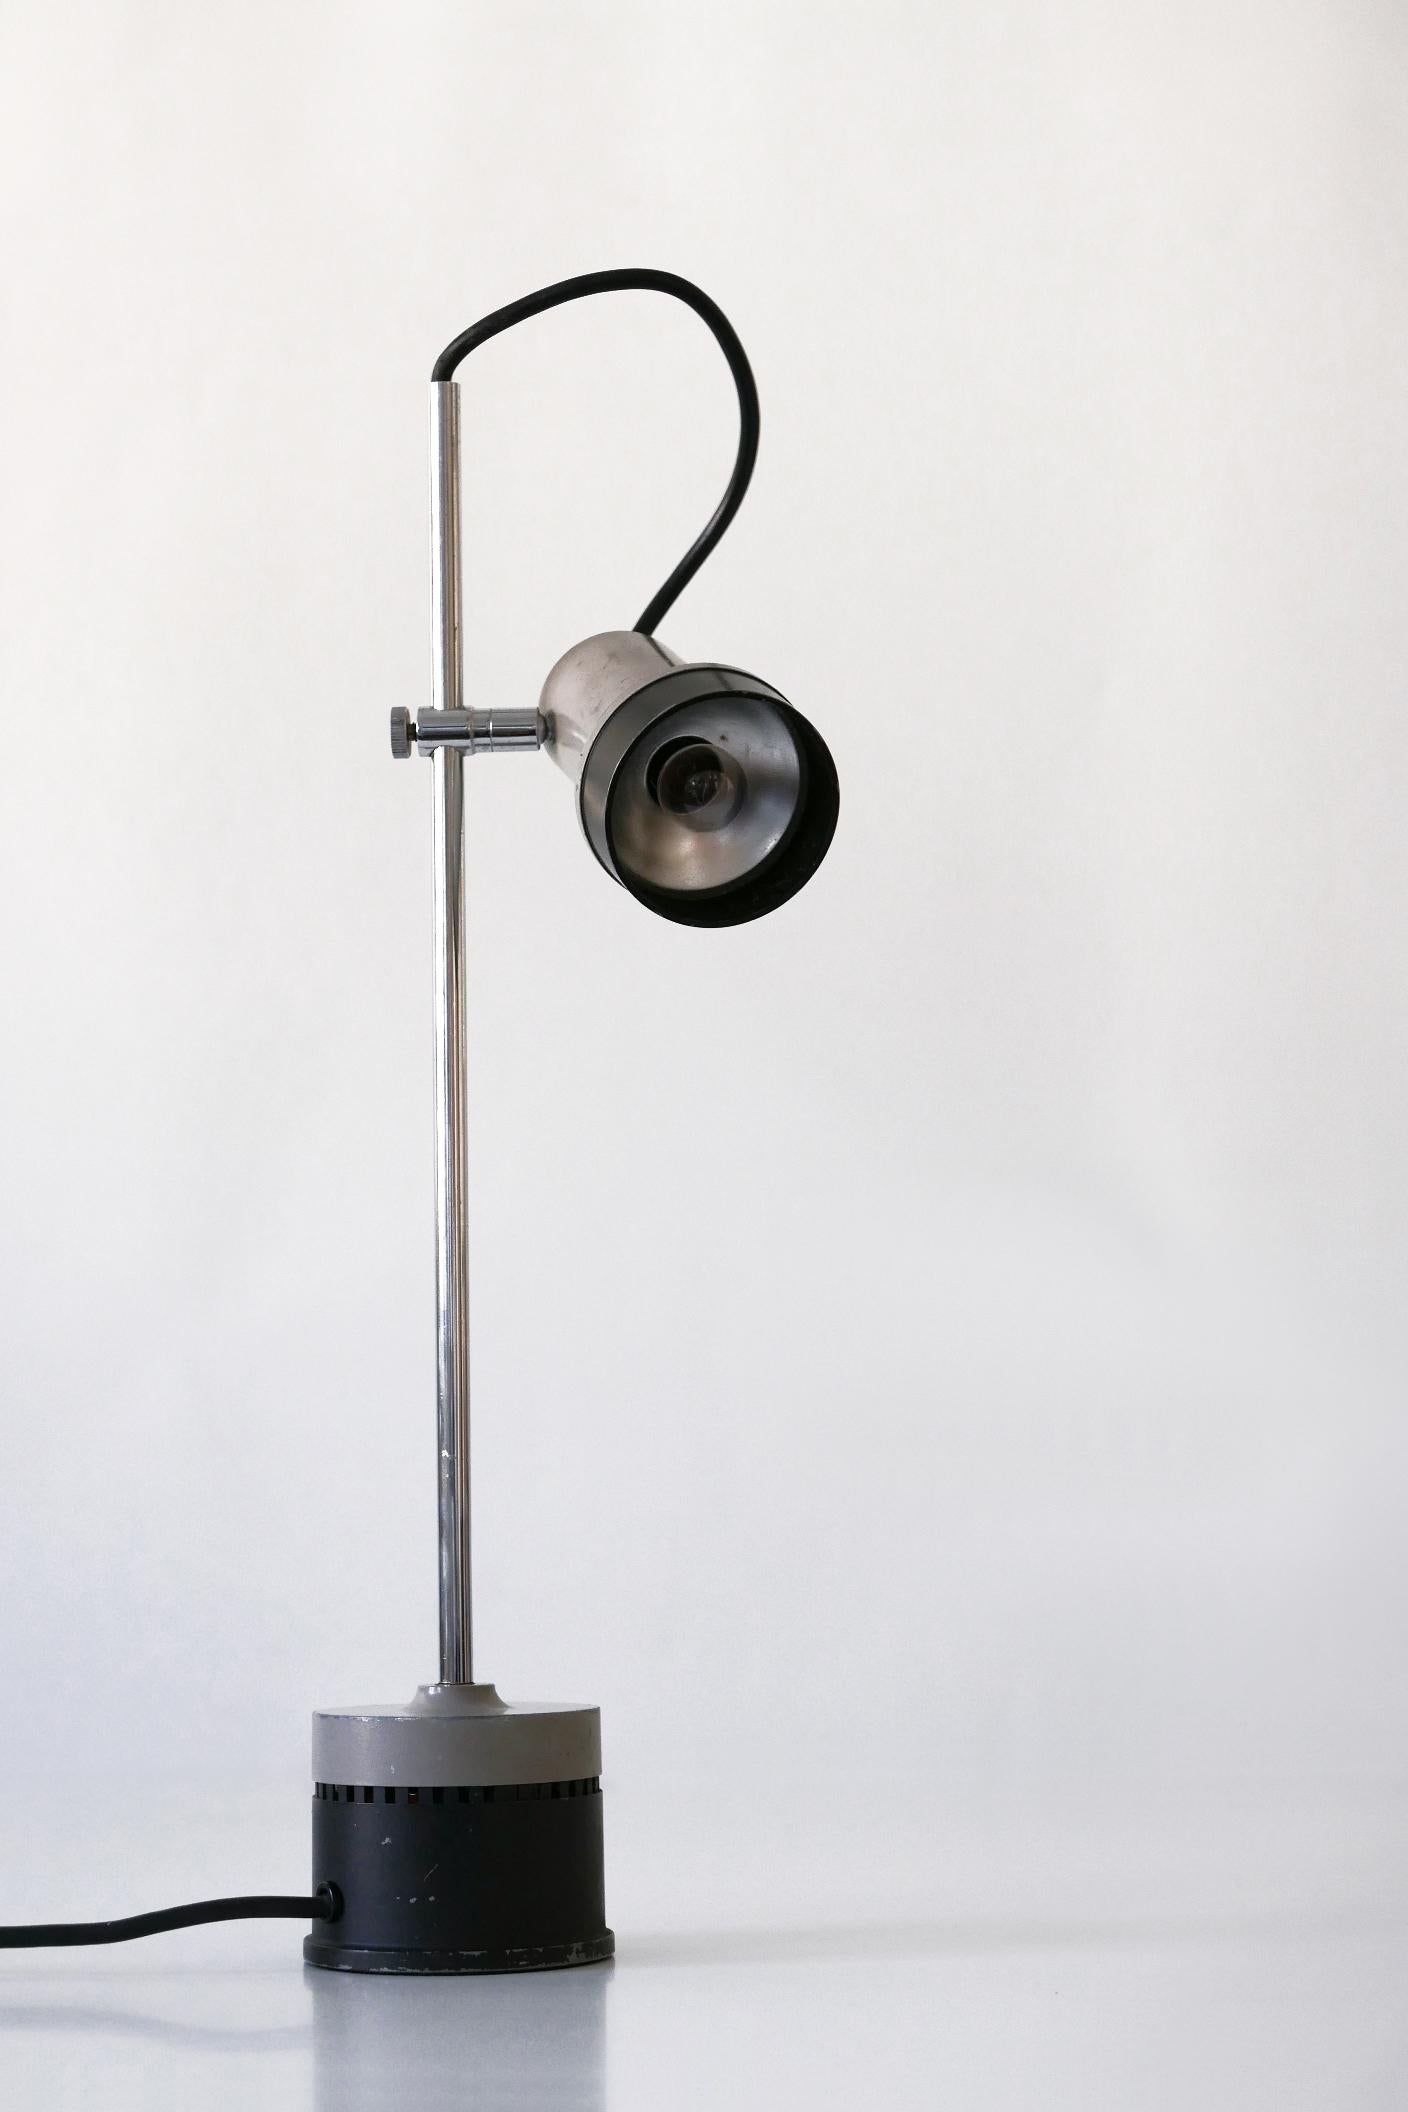 Aluminum Minimalistic Adjustable Mid-Century Modern Table Lamp Desk Light, 1960s, Germany